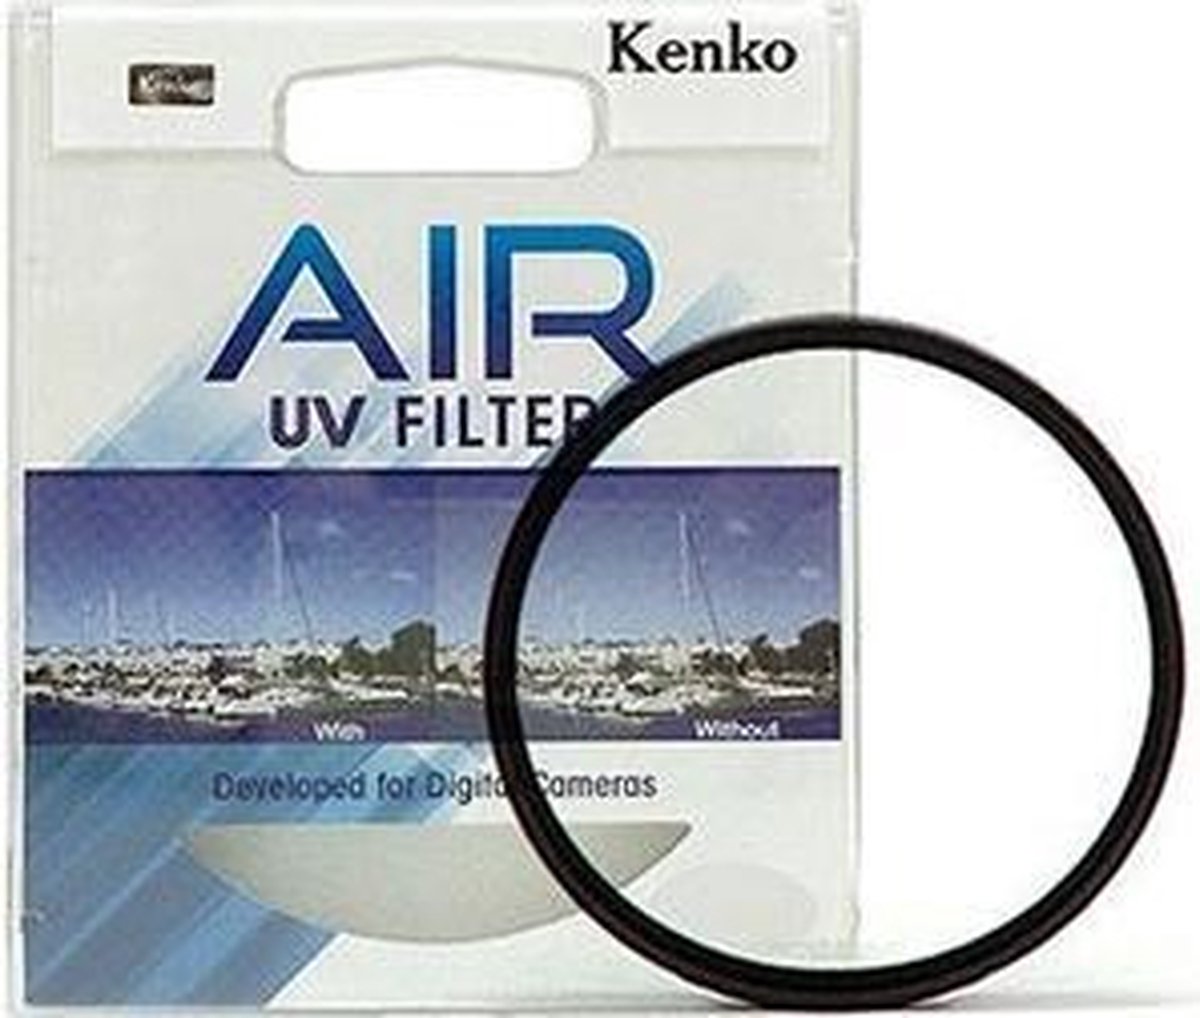 Kenko 82mm Air UV 82mm Ultraviolet (UV) camera filter